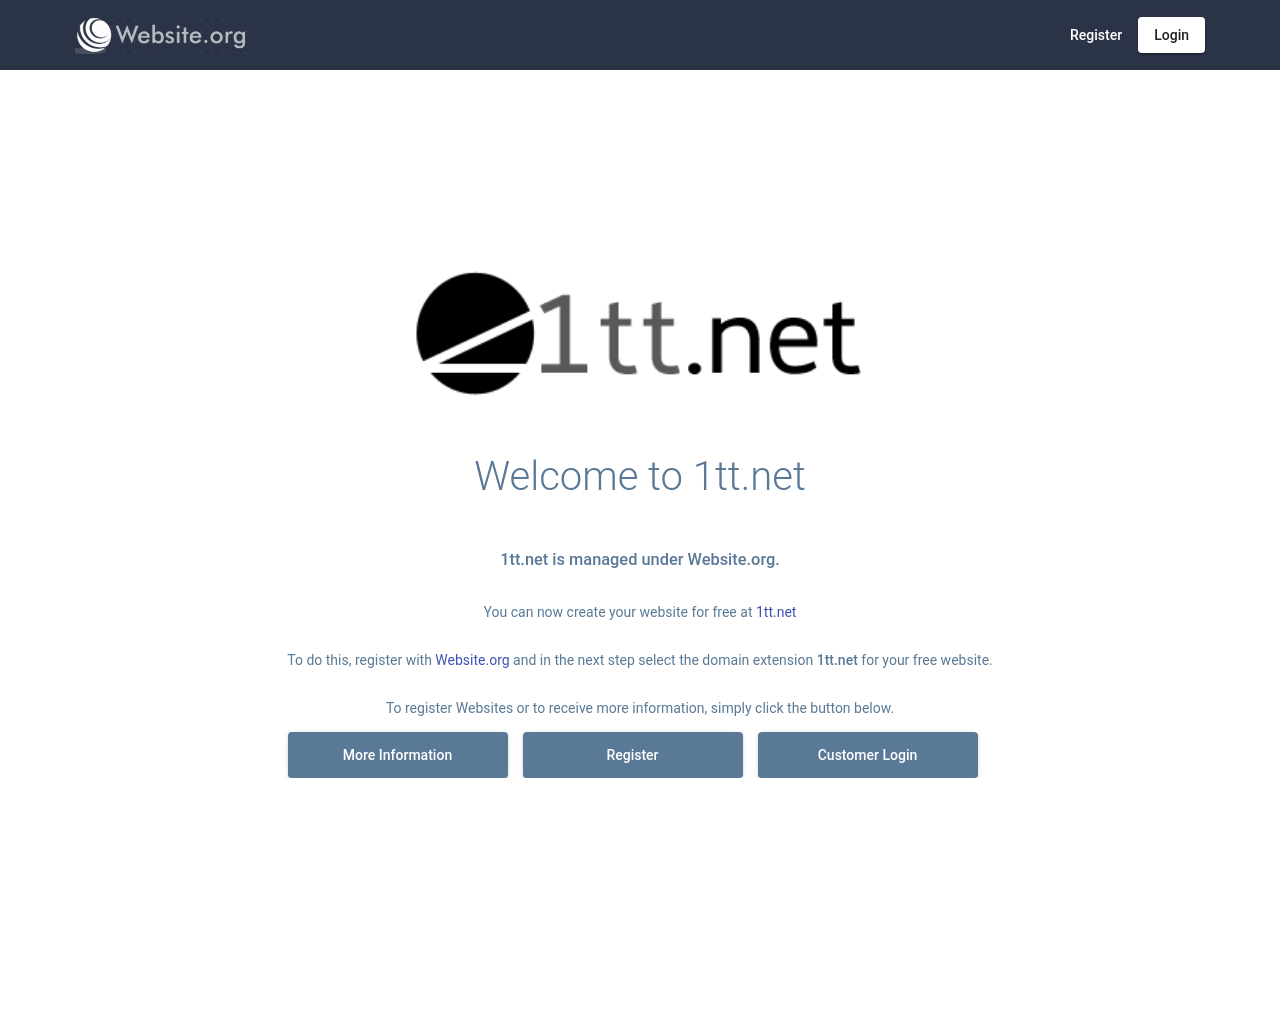 1tt.net